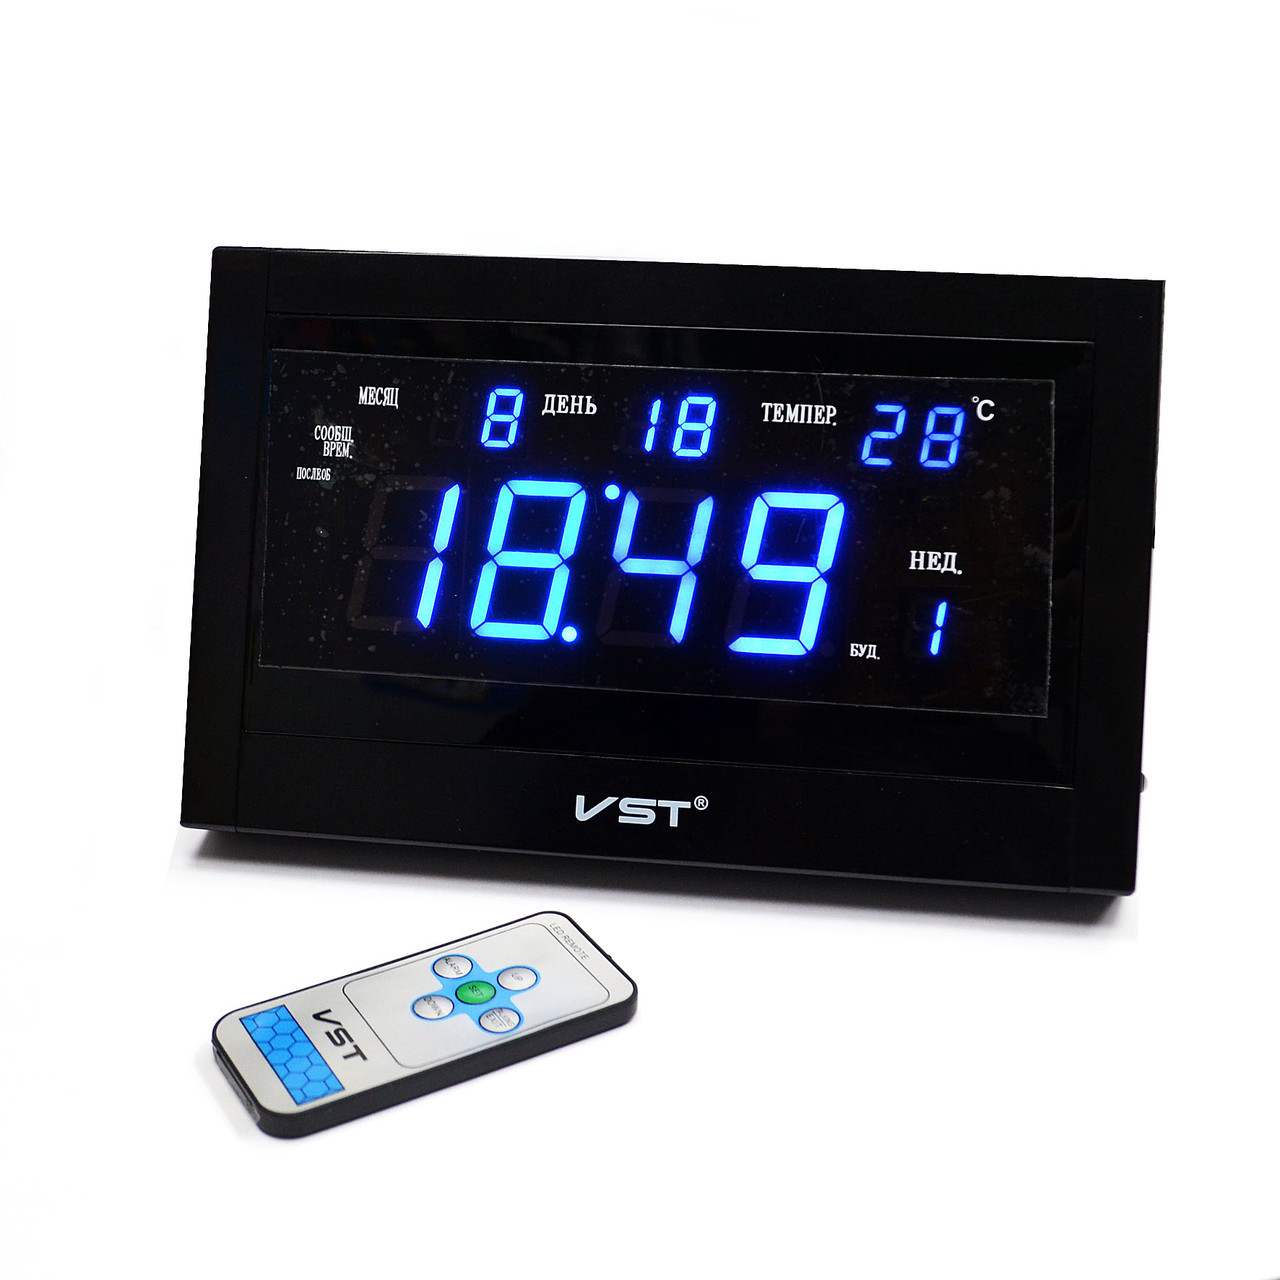 Настенные, настольные сетевые говорящие часы VST 771 T-5, будильник, тНет в наличии